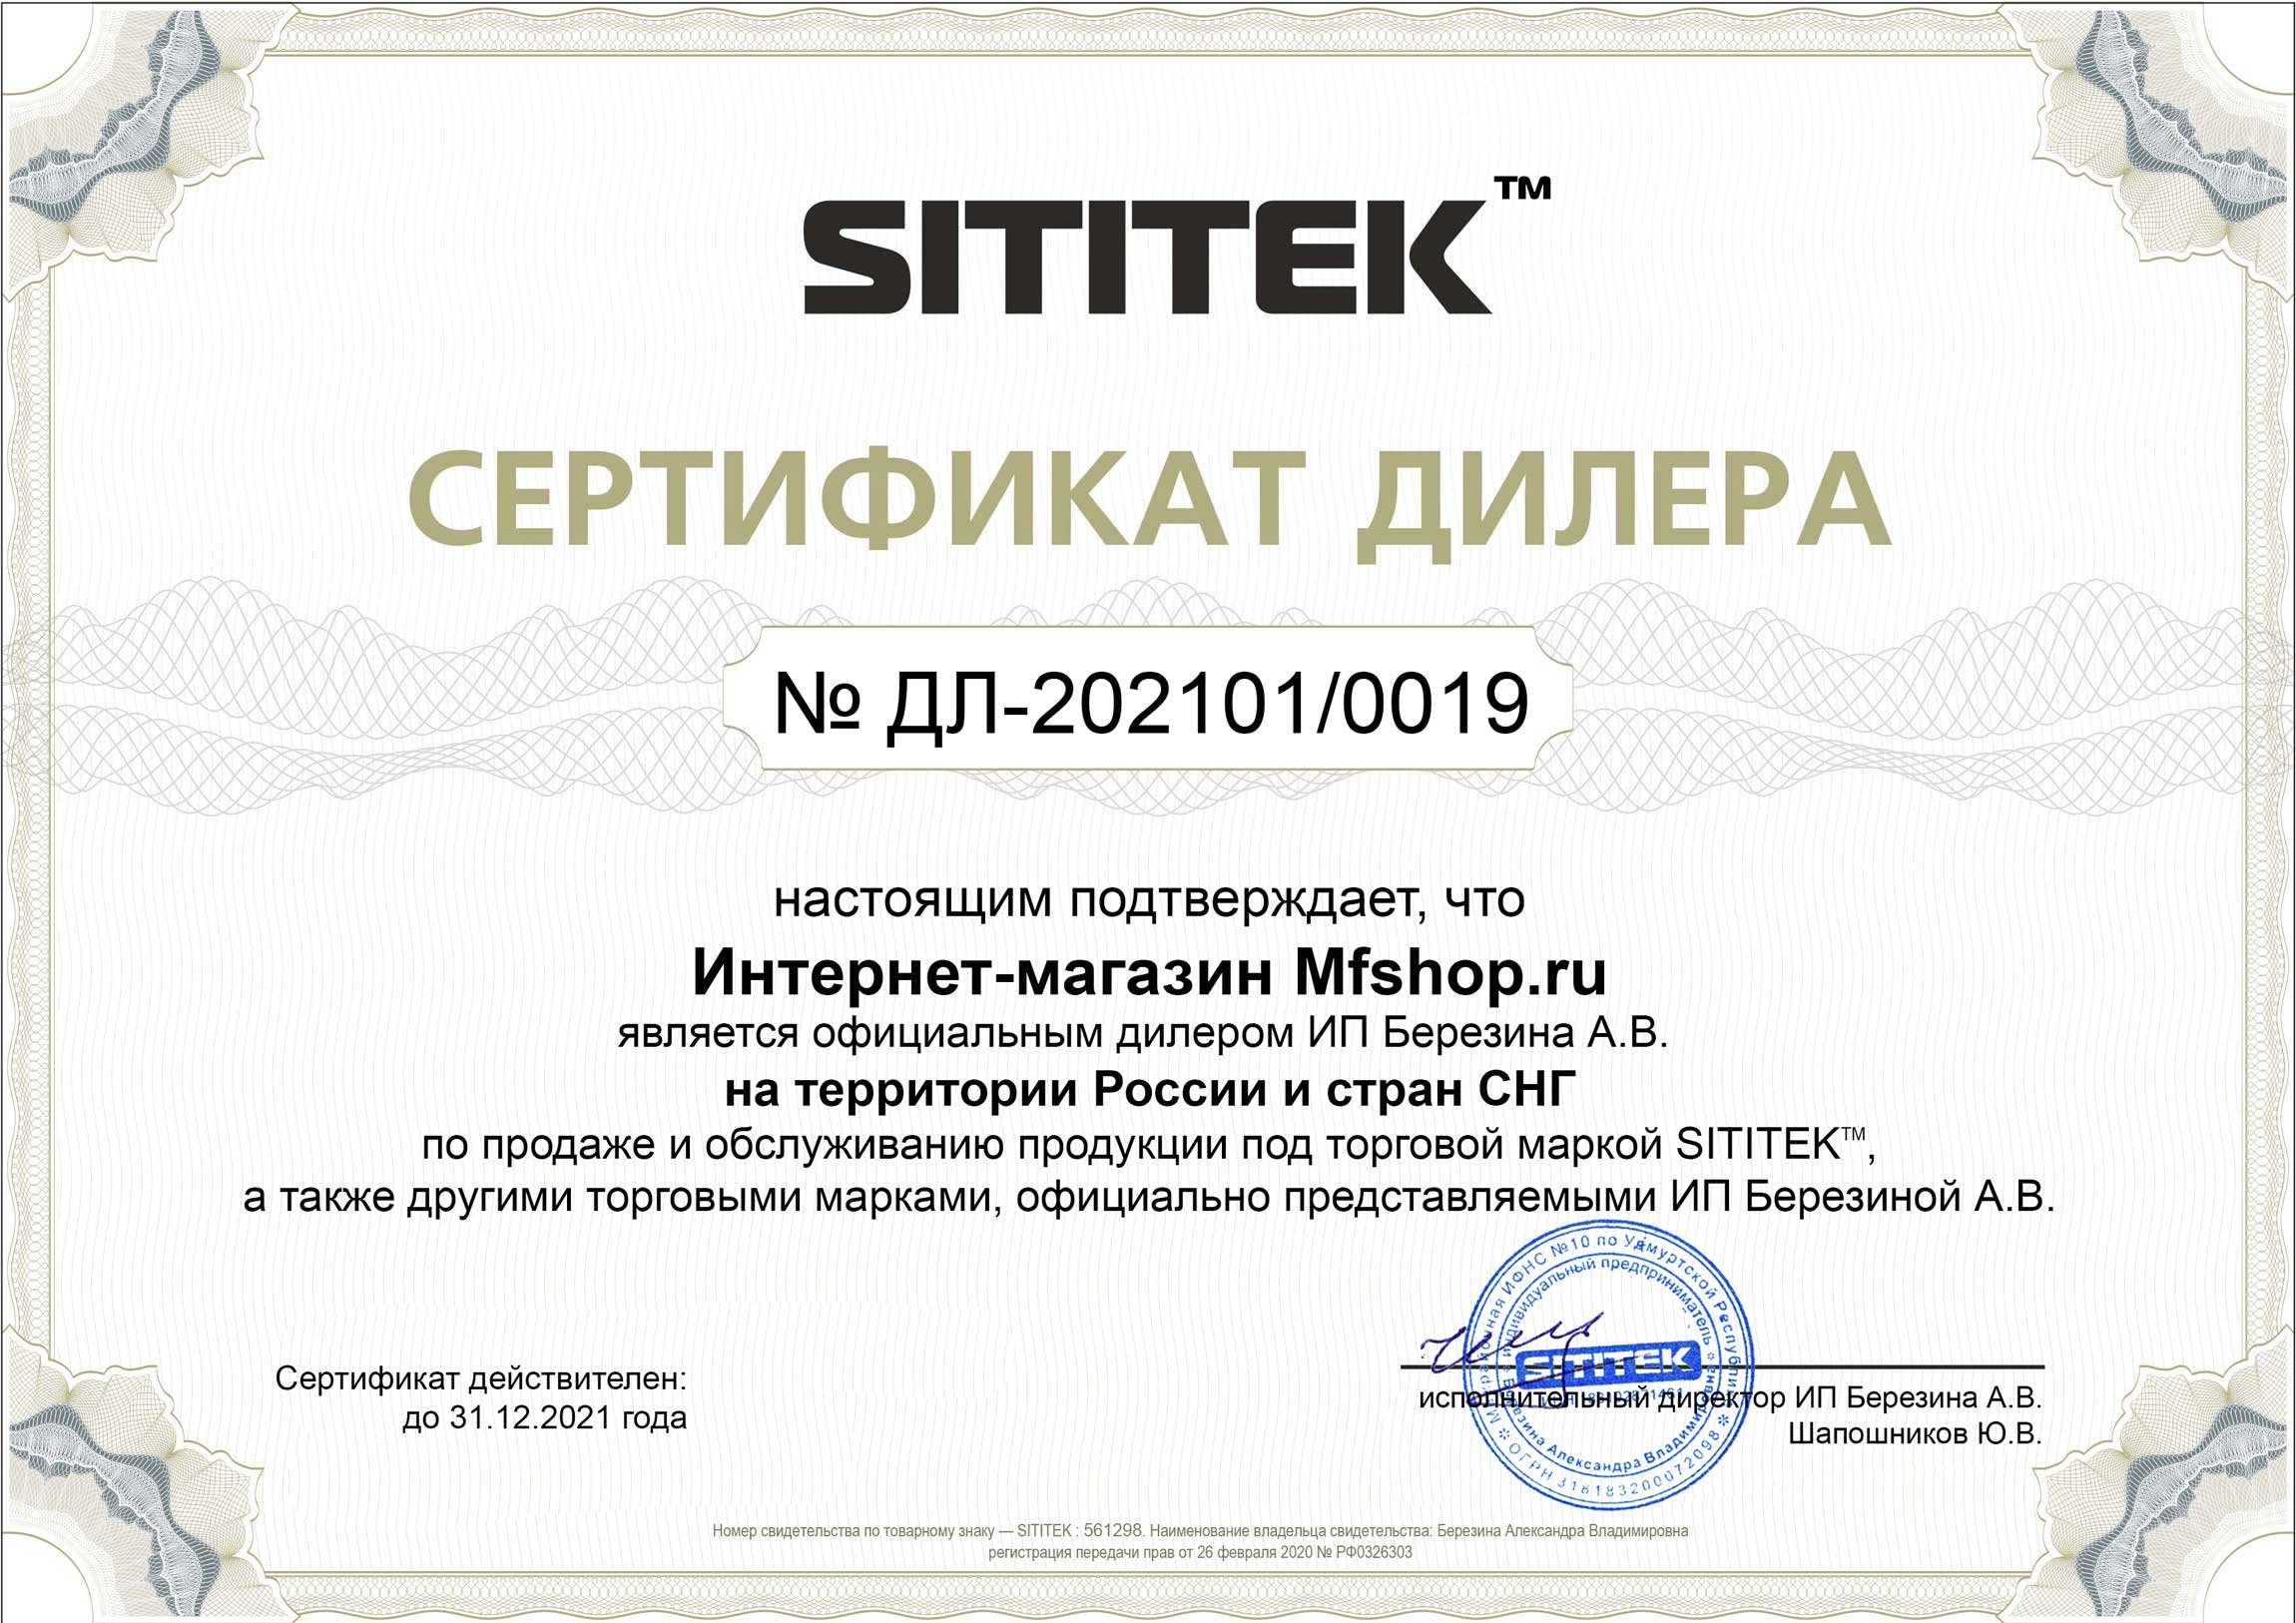 Наш магазин является официальным дилером компании SITITEK и имеет соответствующий сертификат (нажмите для увеличения)